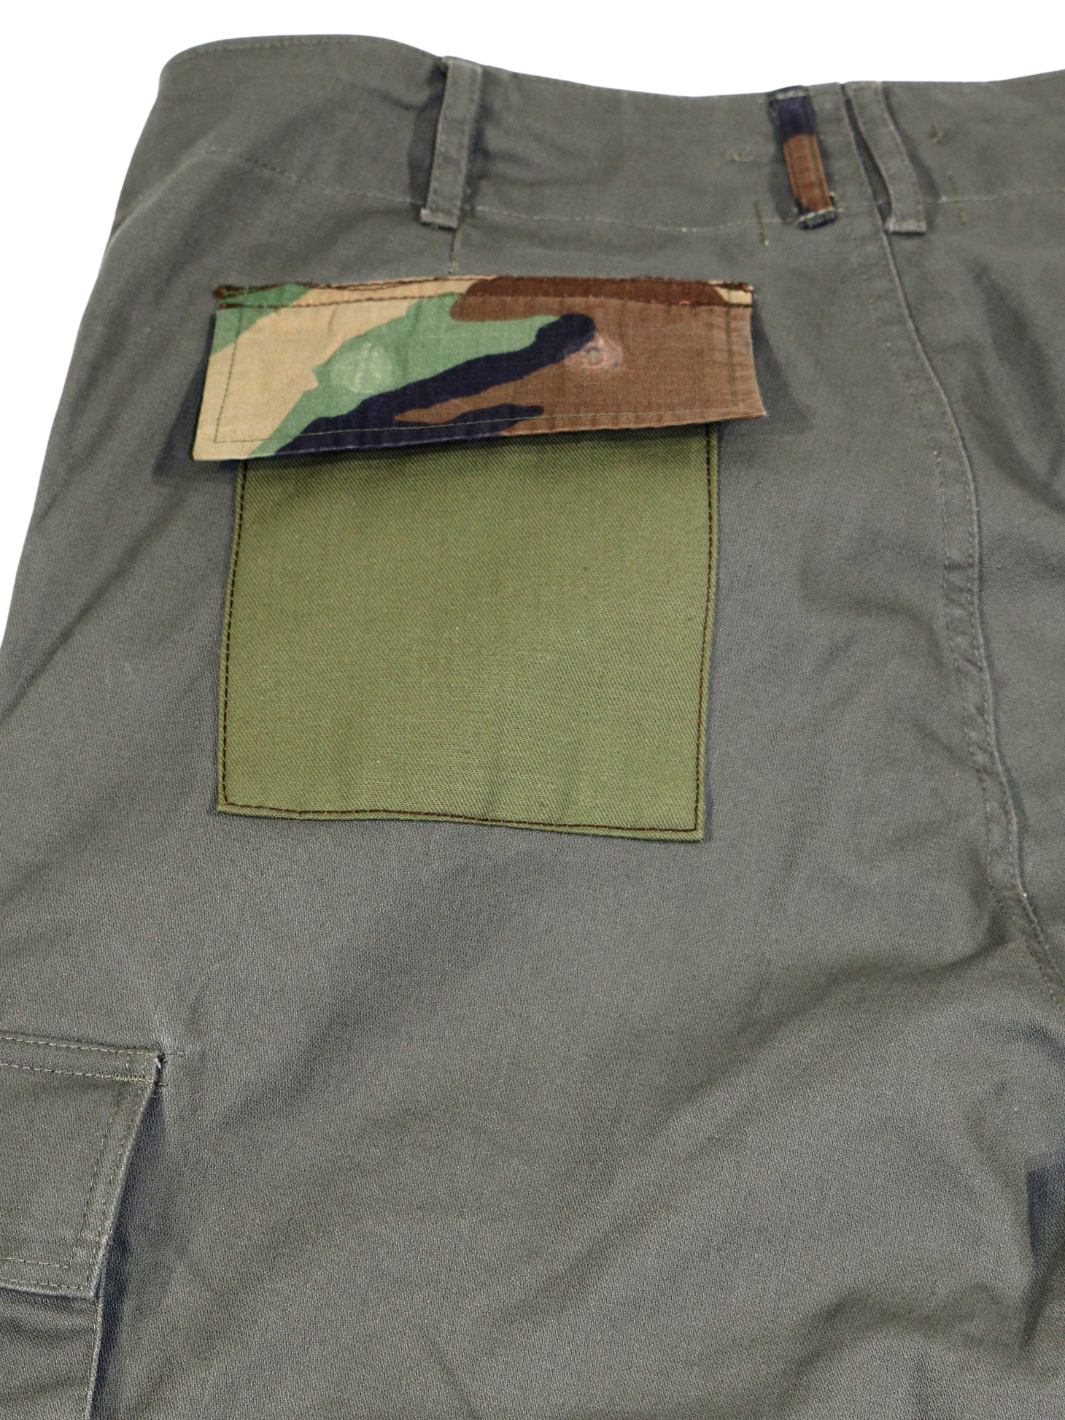 Männer Cargo Hose olive aufgesetzte Gesässtasche mit Camouflage Muster upcycled 100% Baumwolle